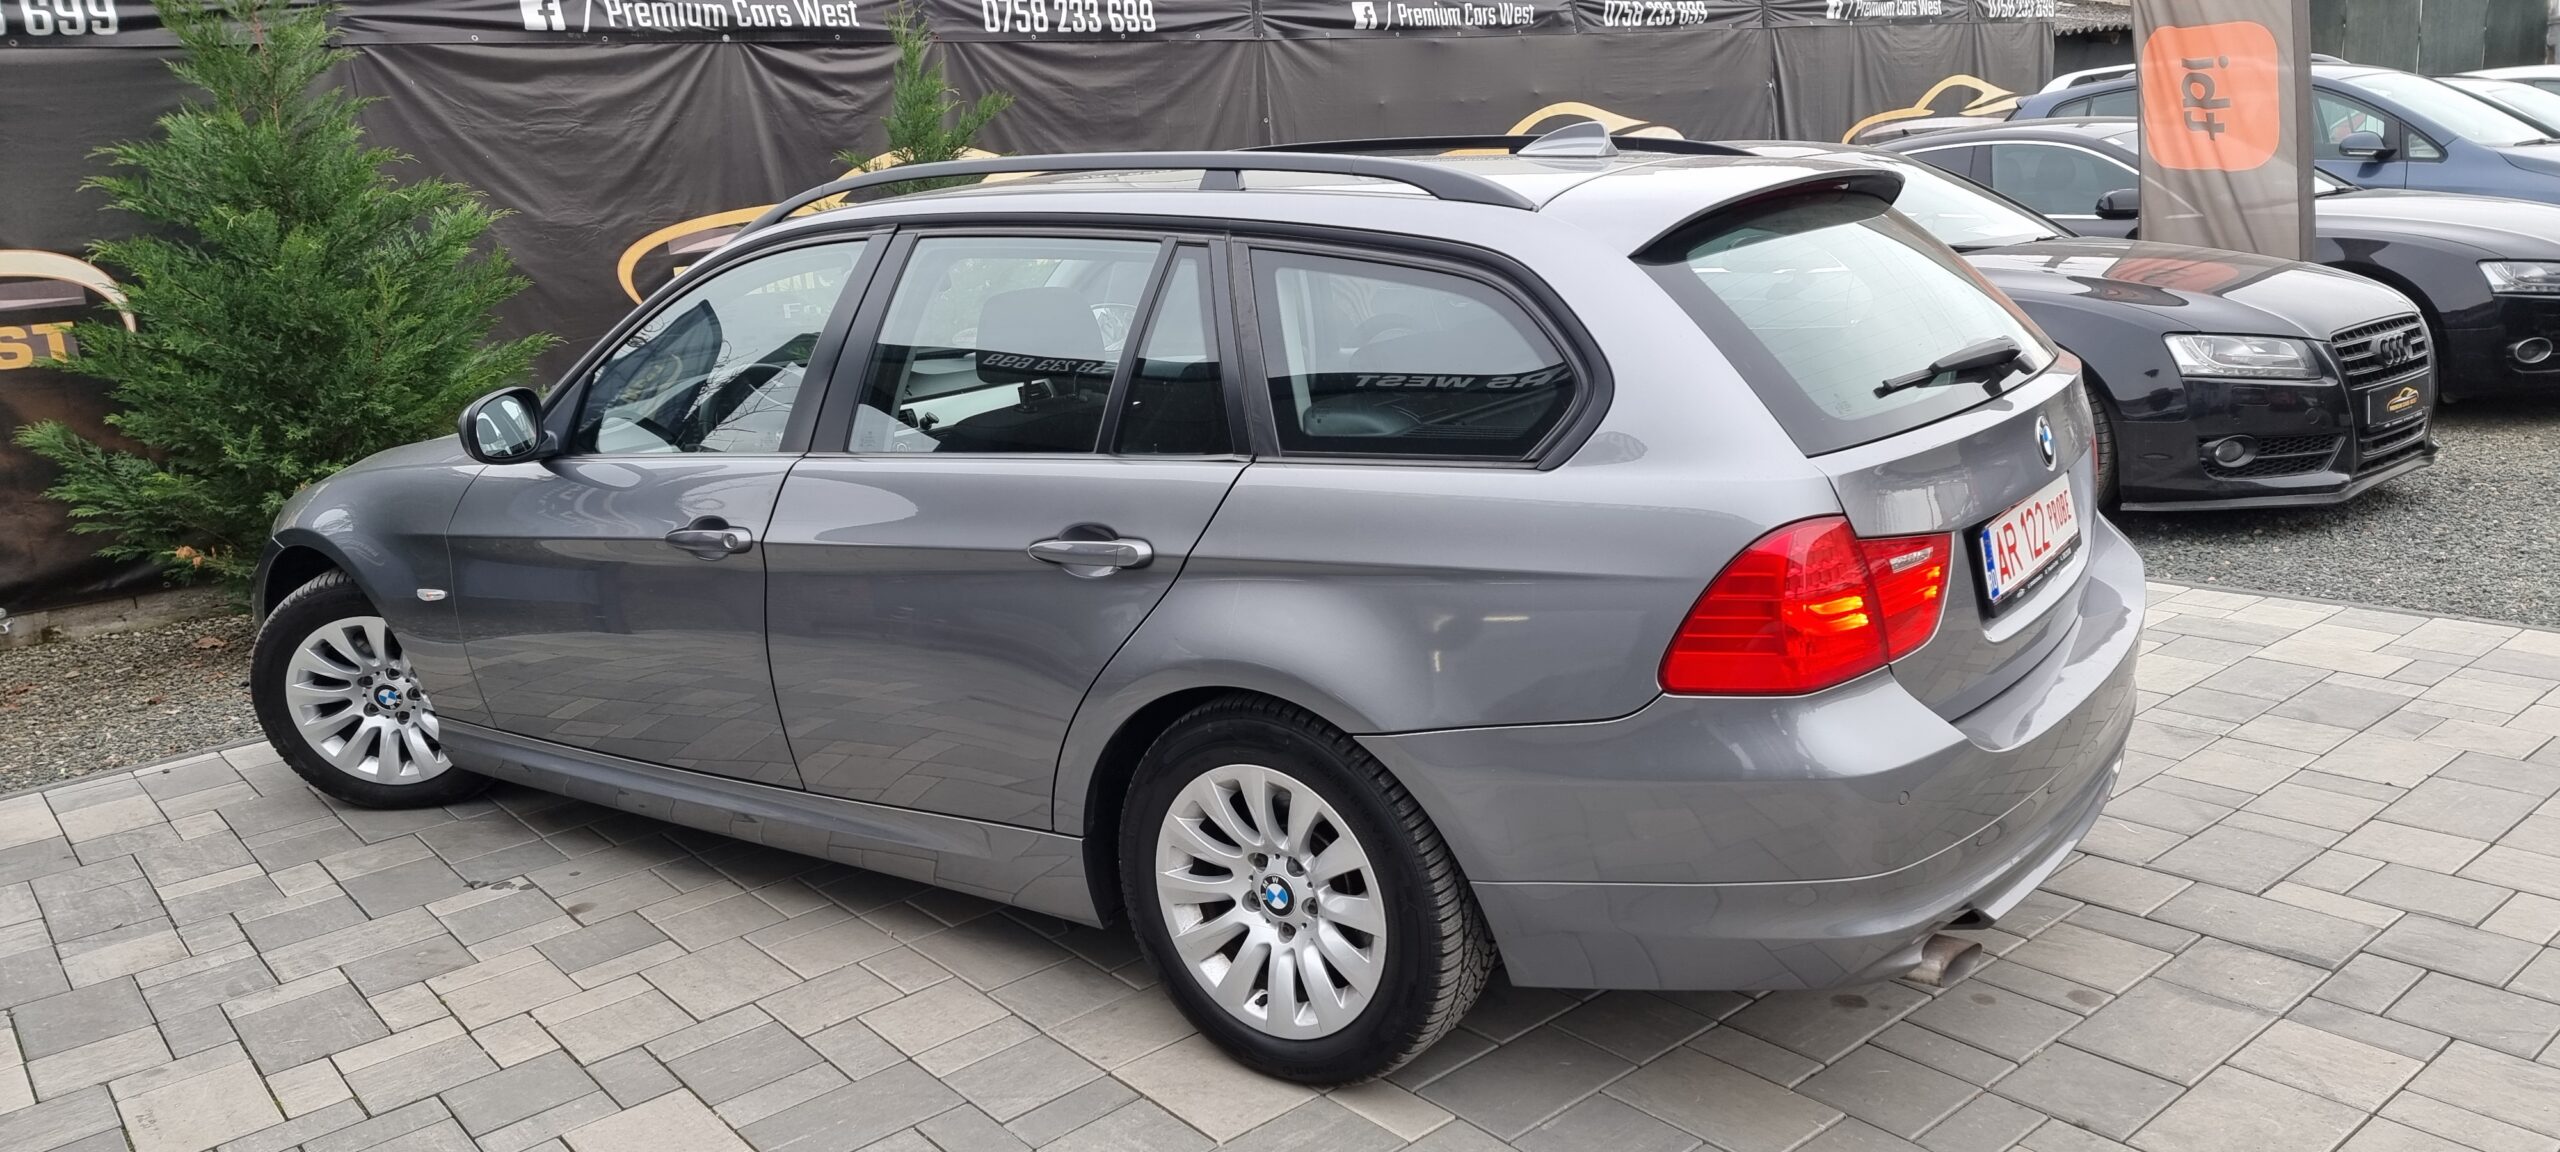 BMW SERIA 3, 2.0 DIESEL, 143 CP, EURO 5, AN 2009